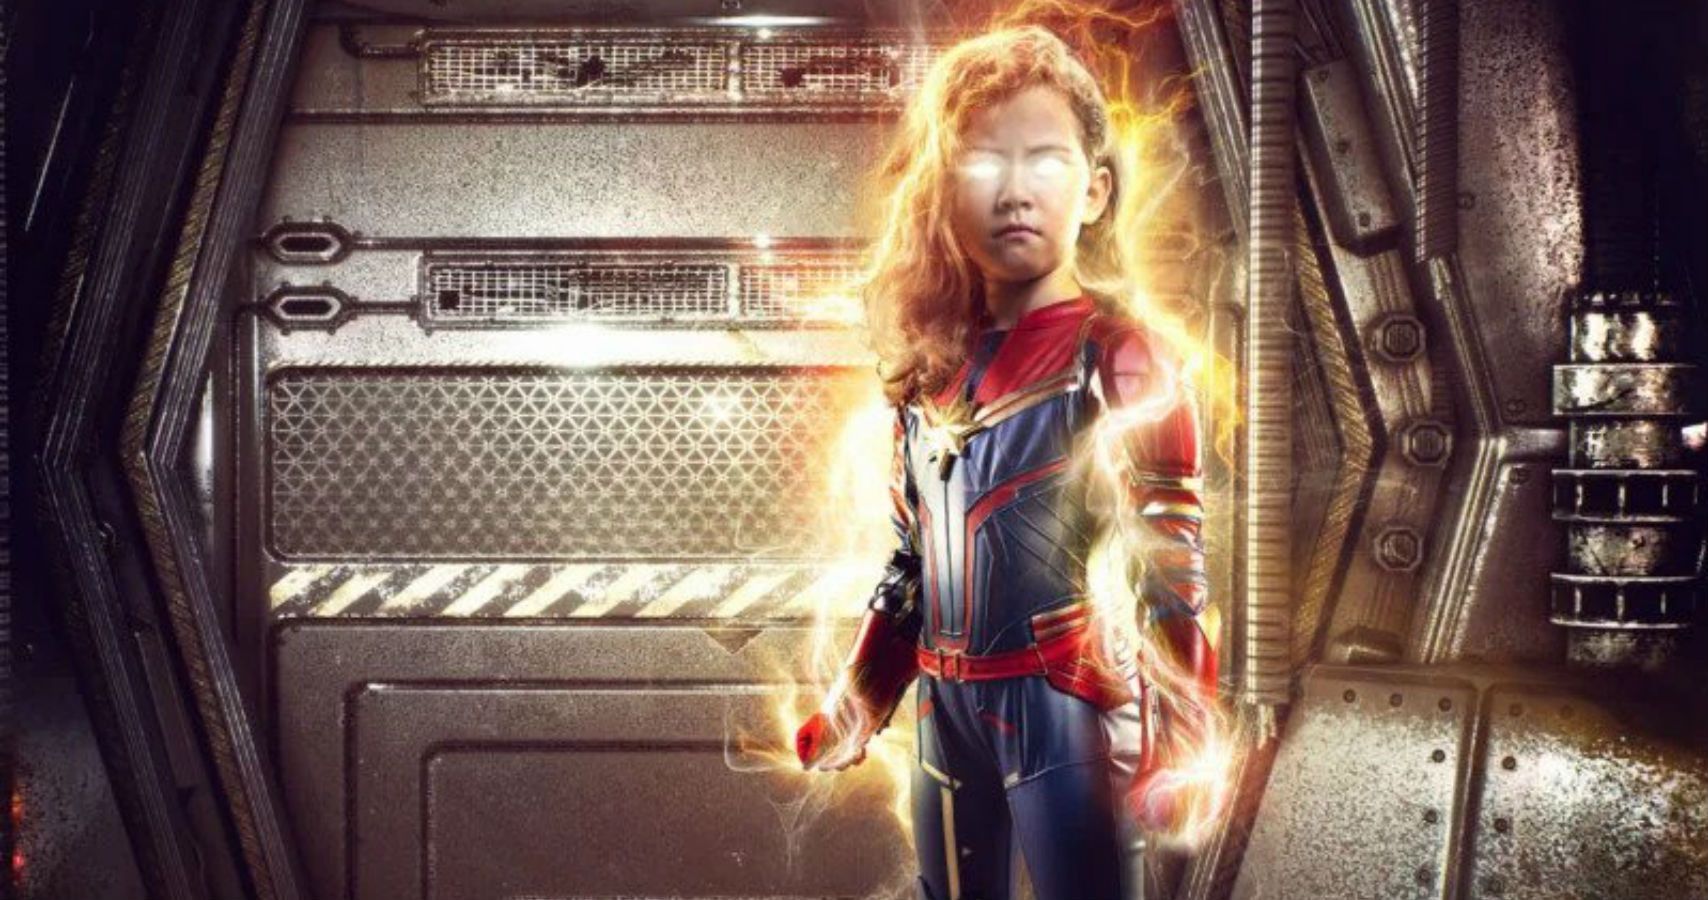 Pai experiente em Photoshop criou o pôster do capitão Marvel, estrelando sua filha de 5 anos